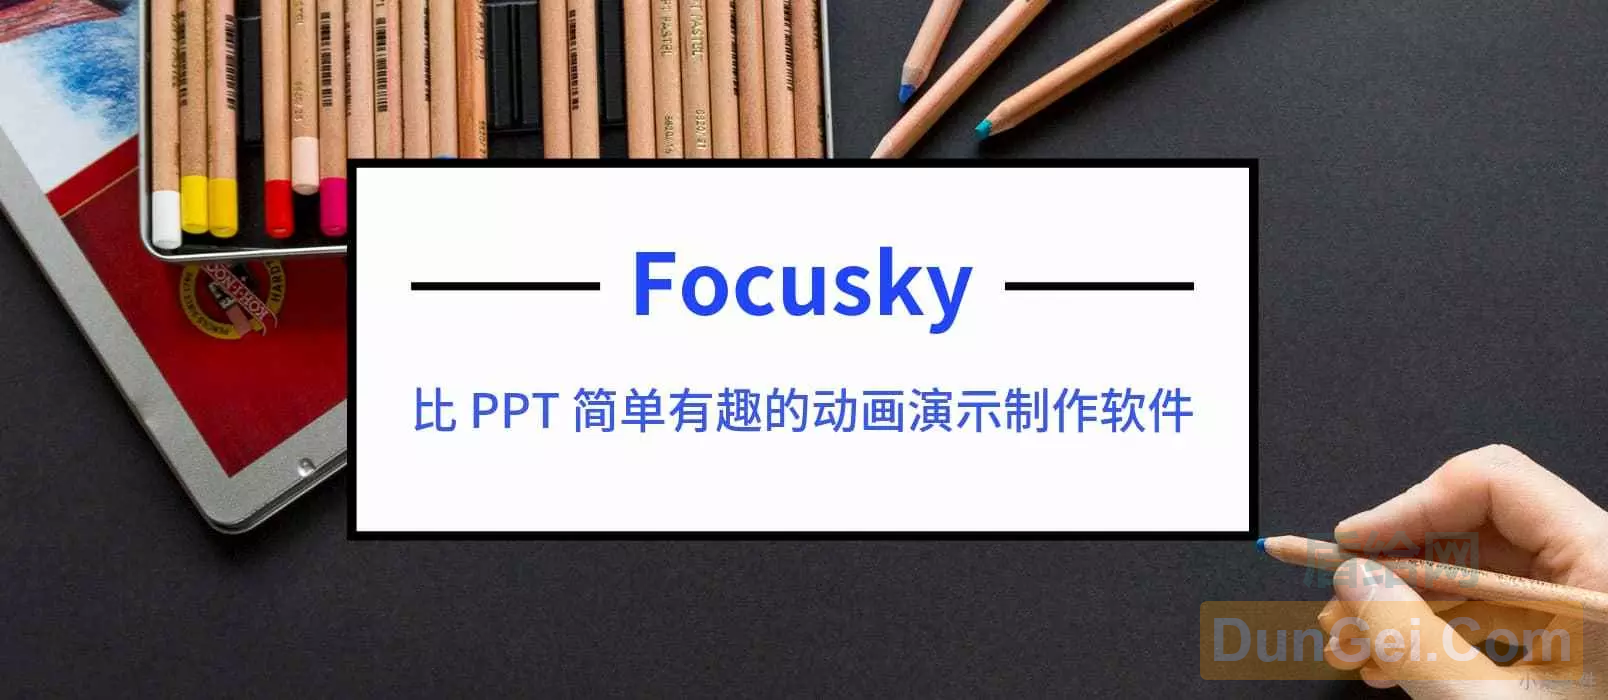 制作炫酷动画PPT的软件 – Focusky 送3000个 特别版激活码[Windows]